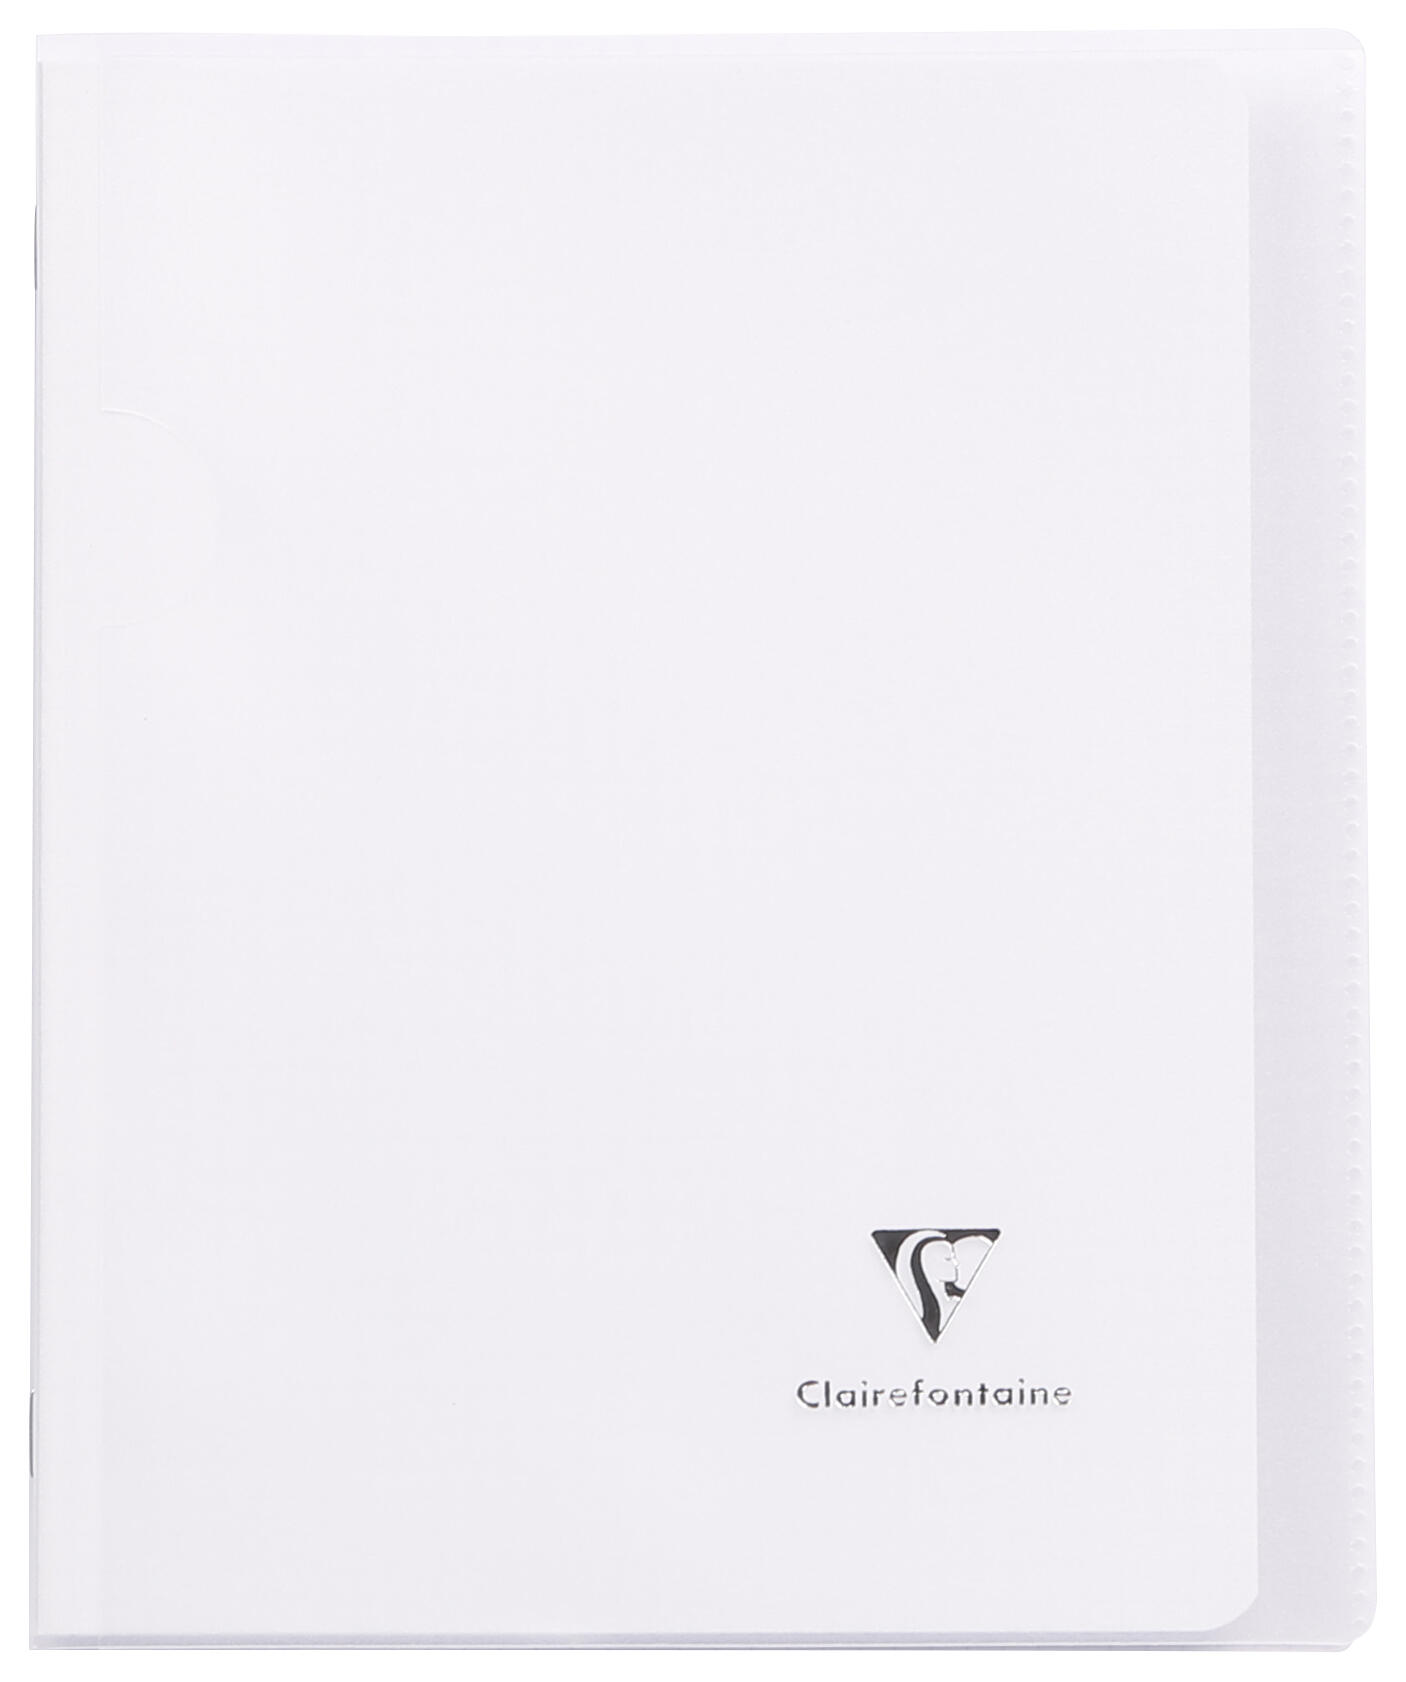 Piqure 17x22 - 90g - 96 p - Séyès - Koverbook couverture transparente incolore